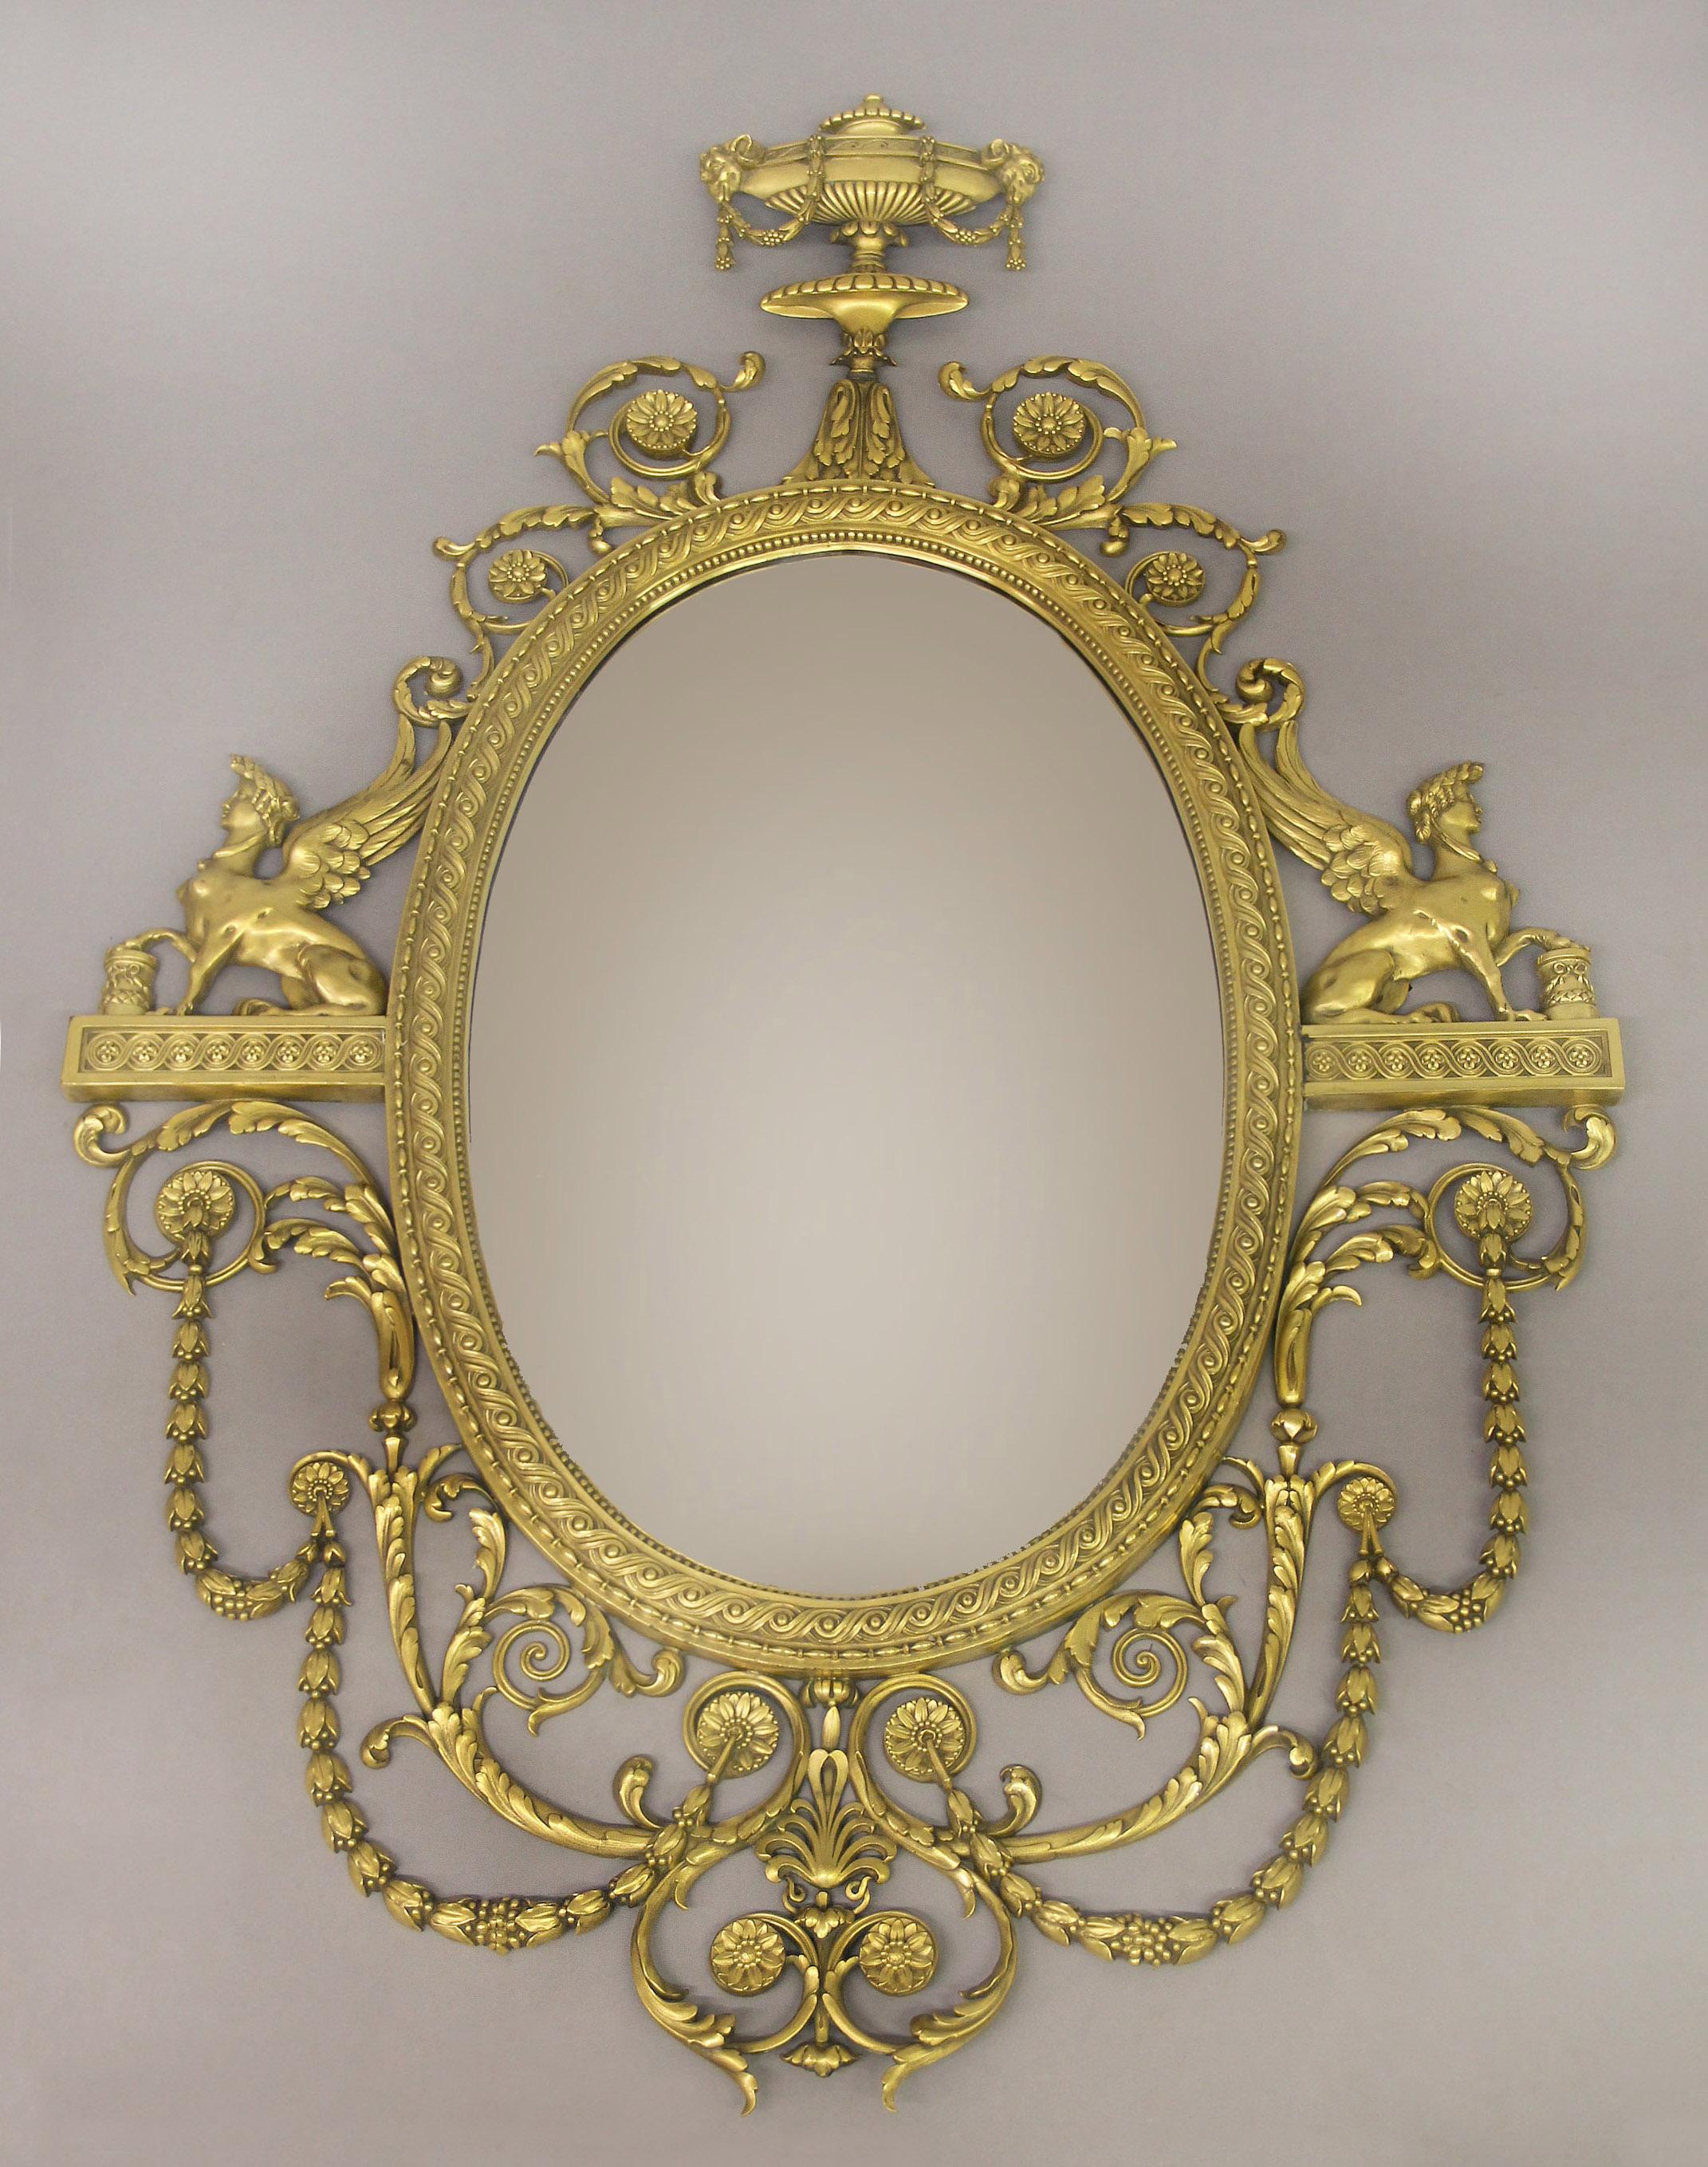 Ein vergoldeter Bronzespiegel von Caldwell aus dem frühen 20.

Edward F. Caldwell und Co. Inc. New Yorker

Der ovale Spiegel in einem guillochierten und mit Perlen besetzten Rahmen, überragt von einer Urne mit Widderköpfen, die mit